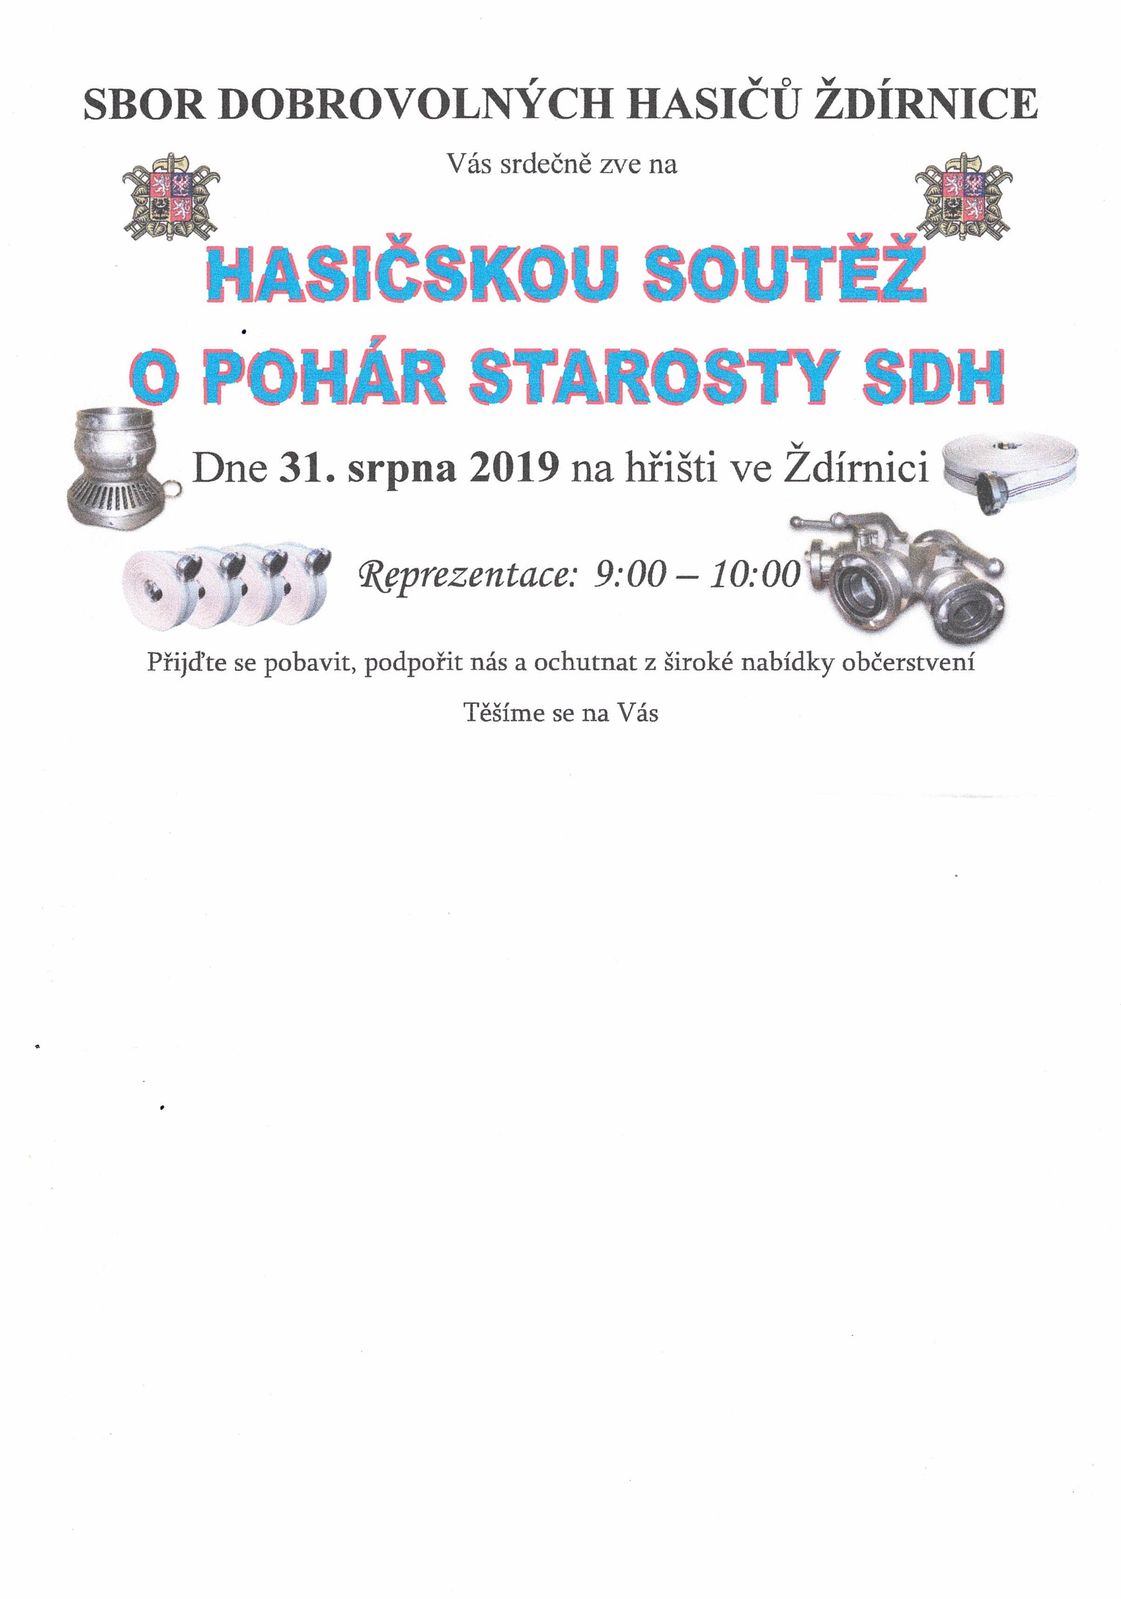 SDH Ždírnice zve na "Hasičskou soutěž o pohár starosty SDH" dne 31.08.2019